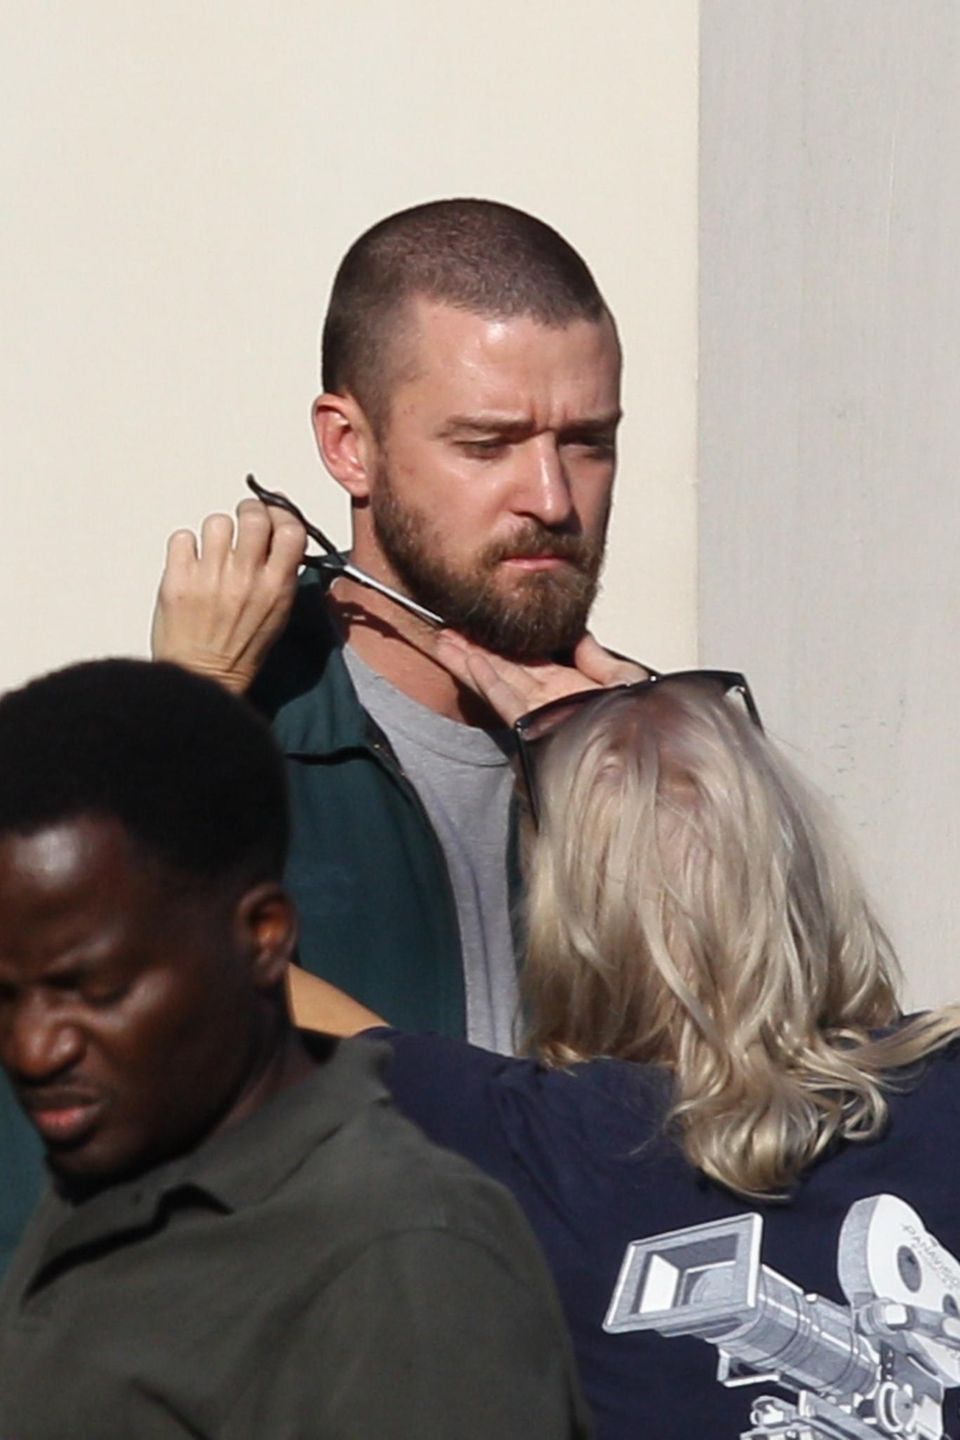 Bei Dreharbeiten muss alles perfekt sitzen – auch der Bart von Justin Timberlake. Zum Glück haben die fleißigen Assistenten am Set zu seinem neuen Film "Palmer" jedes Härchen im Blick.